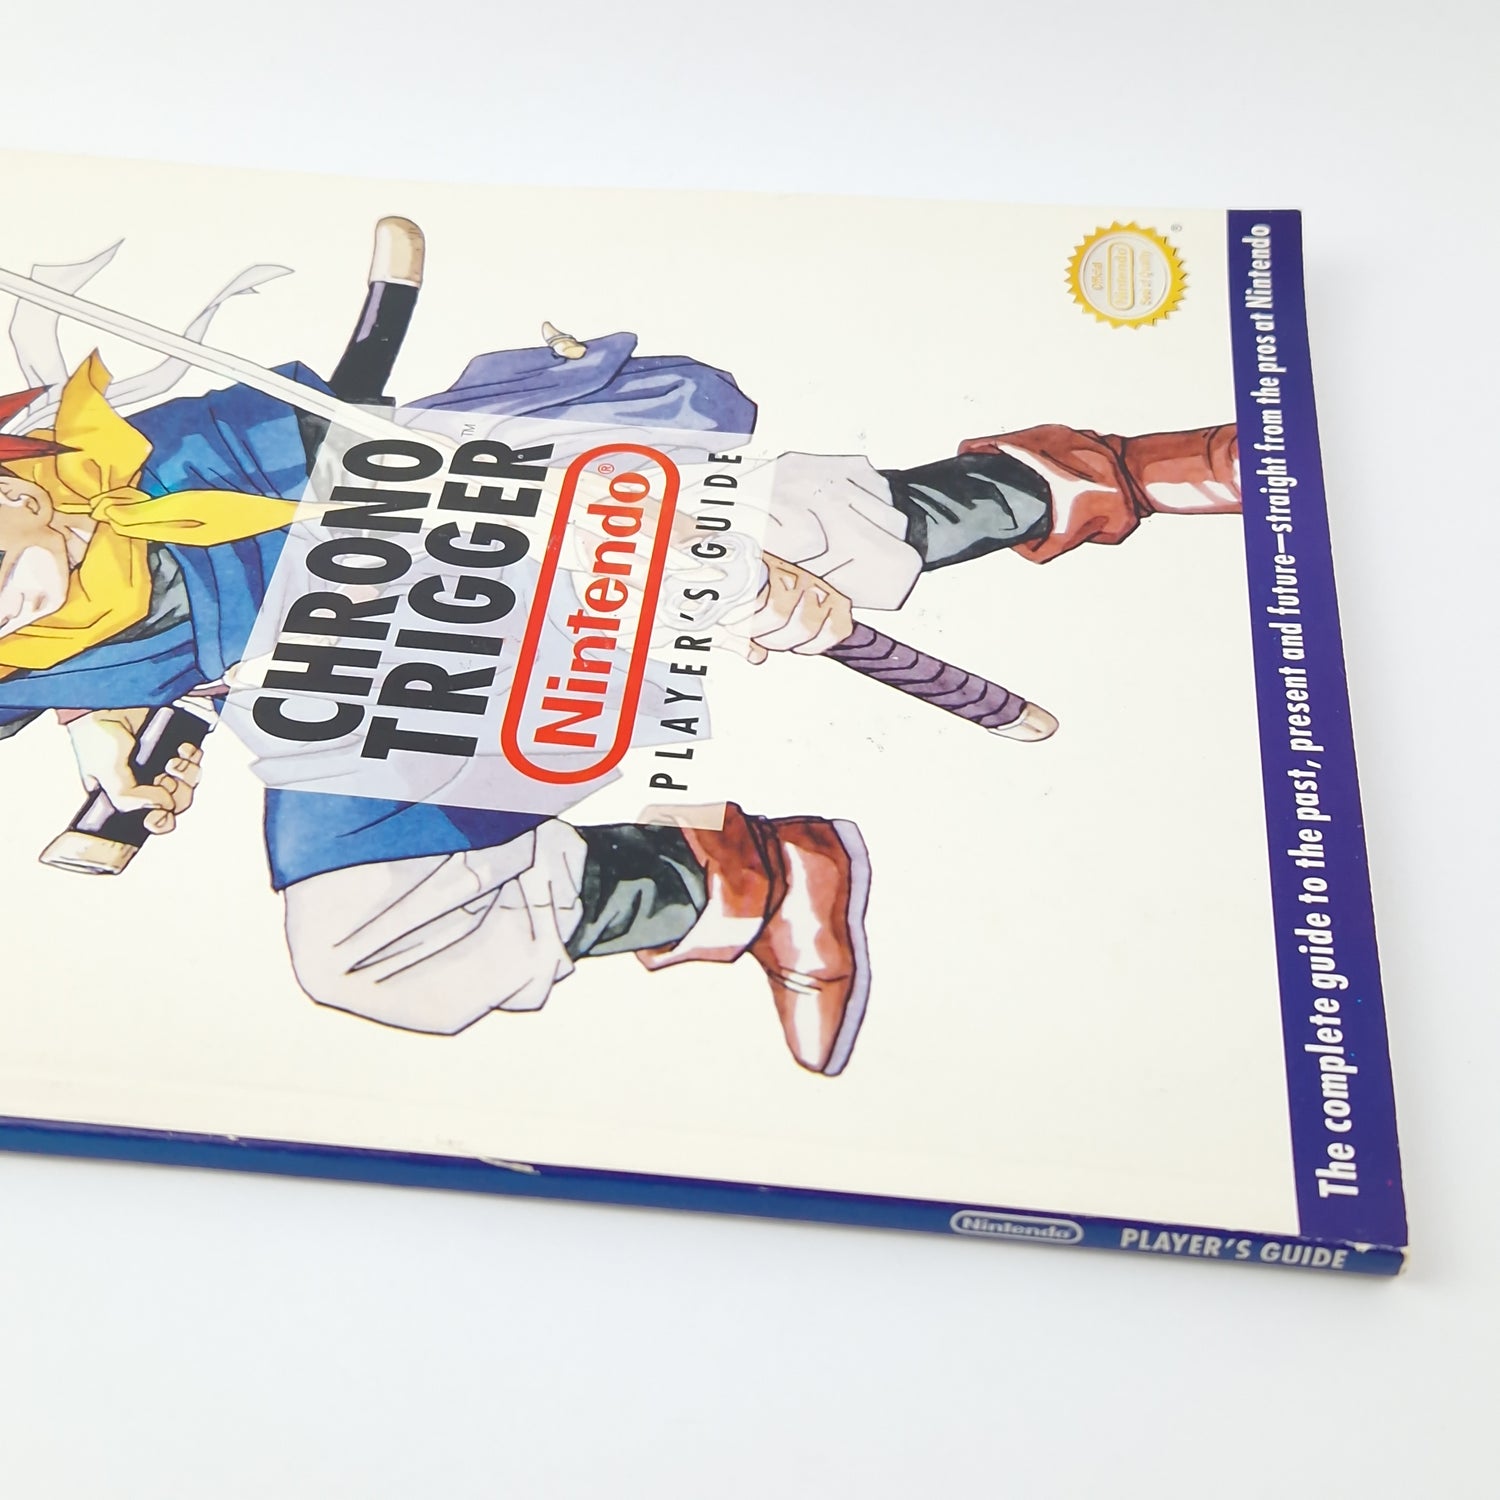 Super Nintendo game: Chrono Trigger + game advisor + soundtrack - SNES original packaging